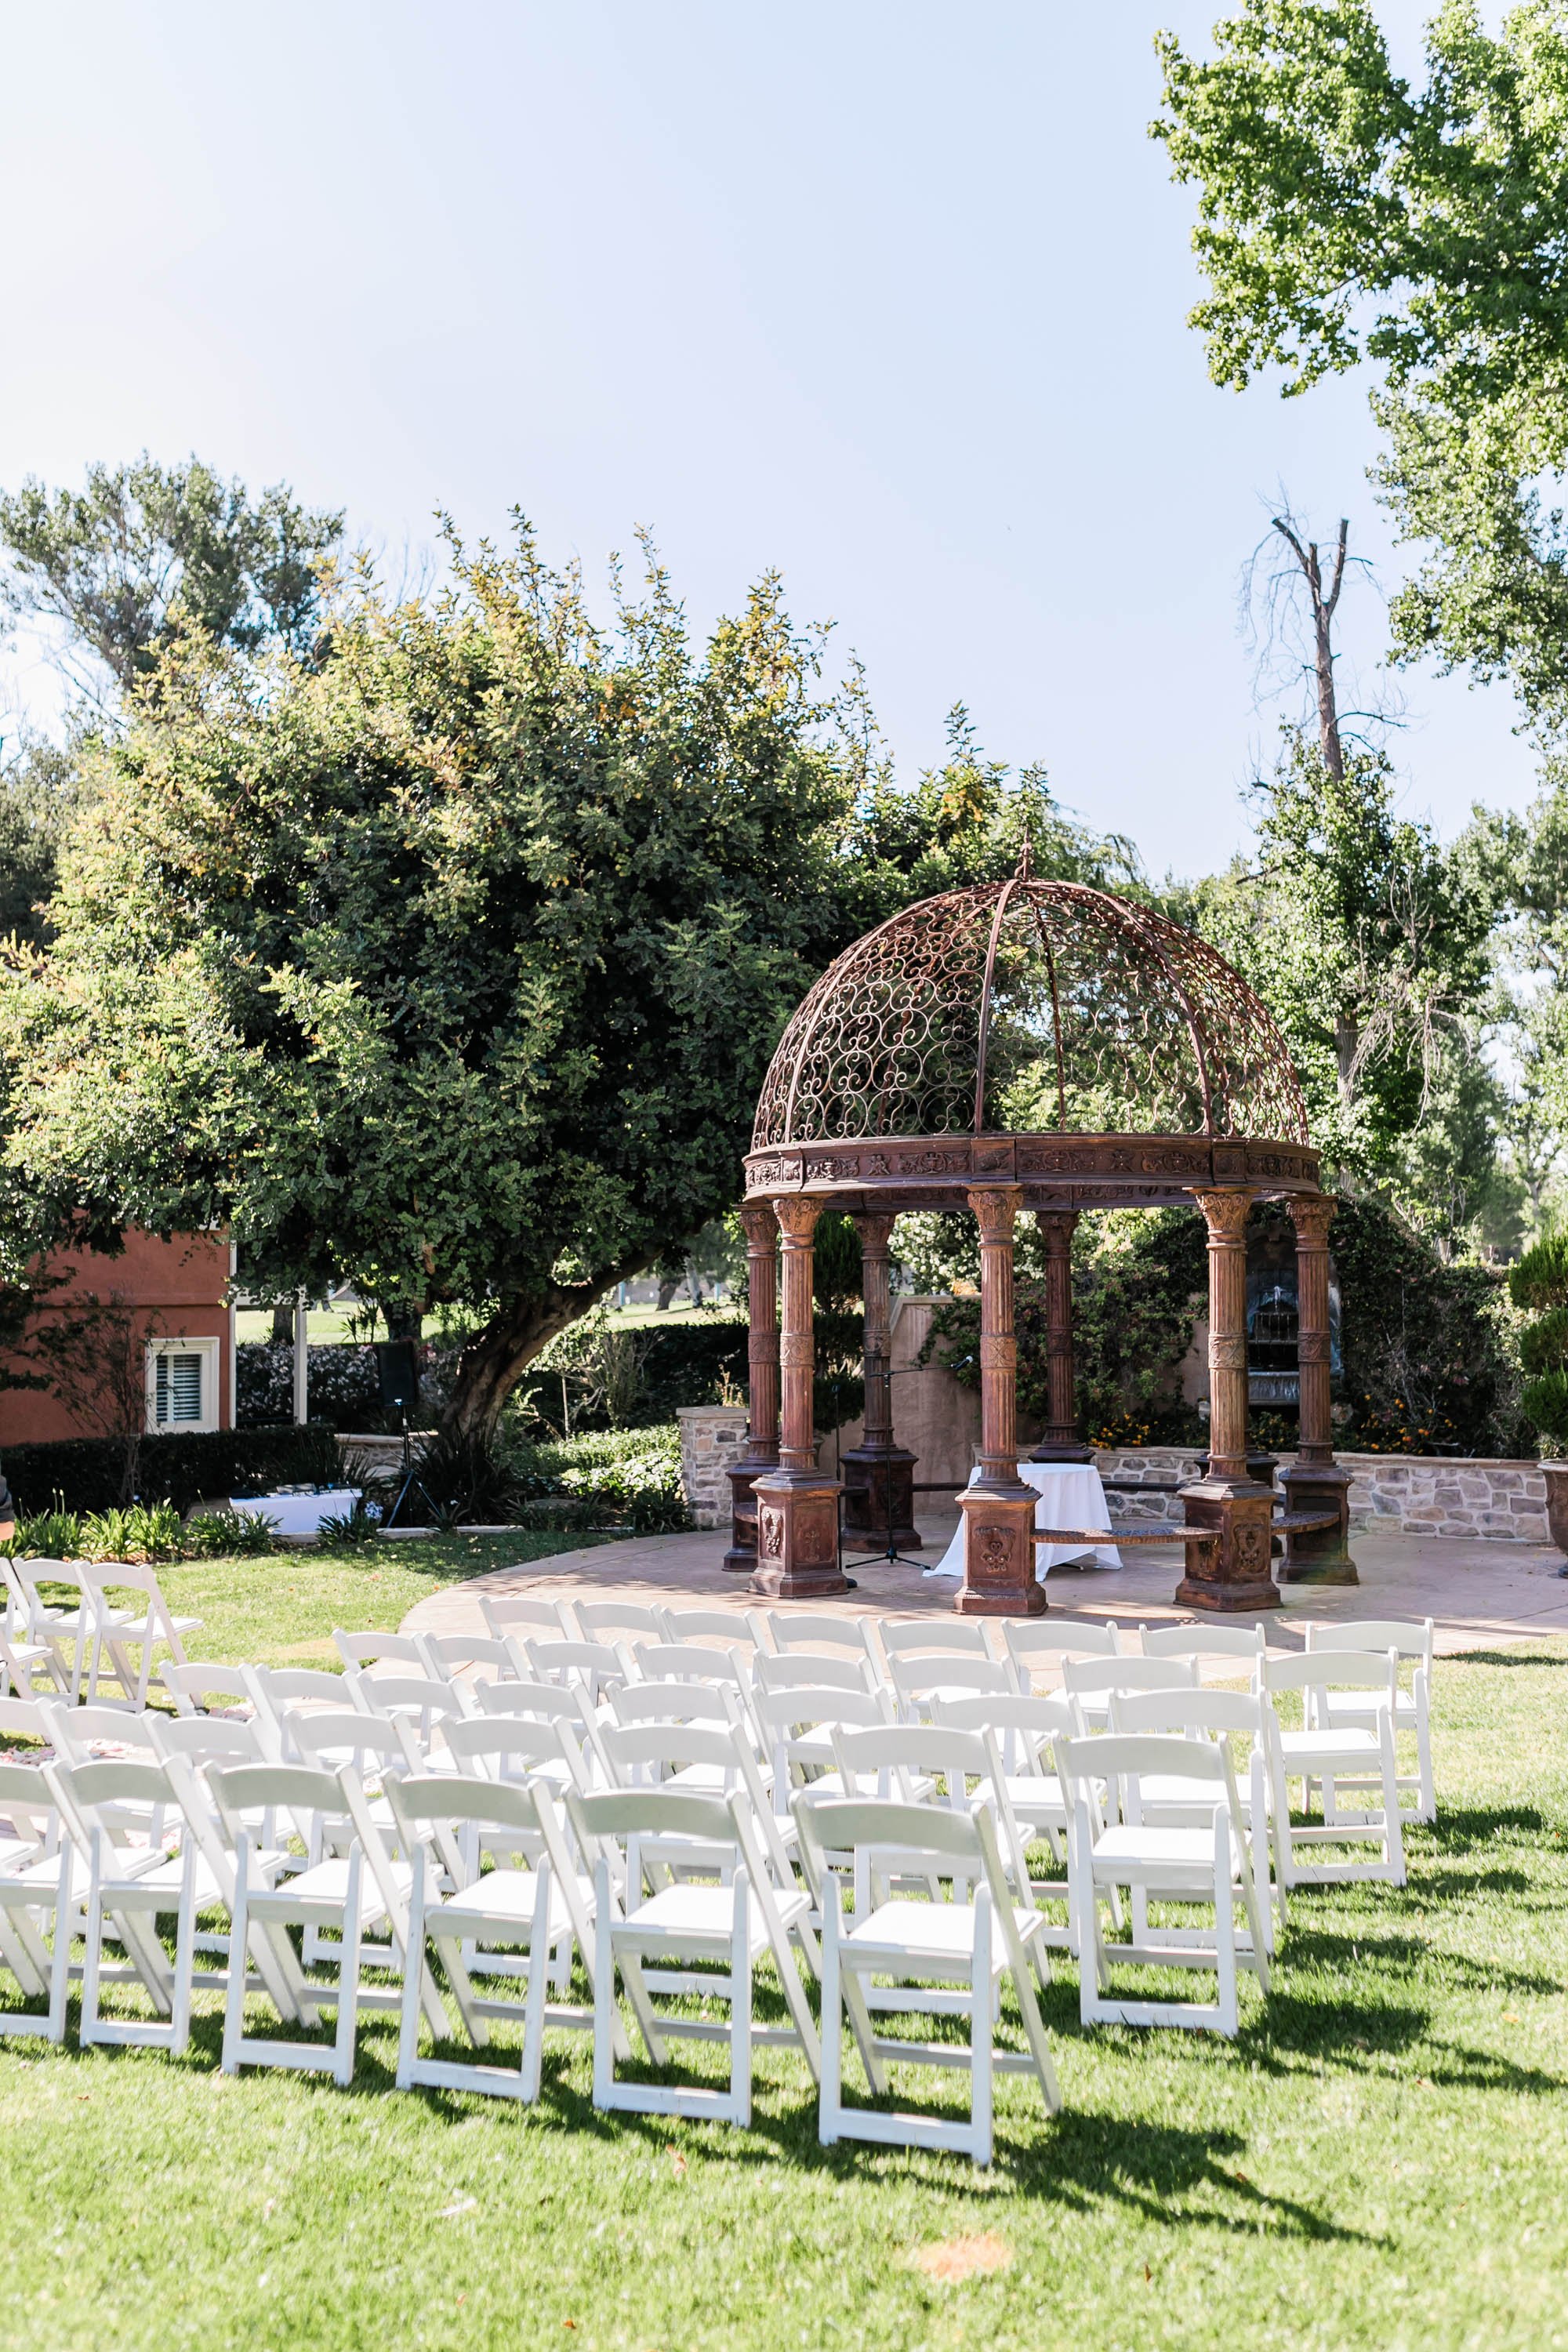 Tuscan garden ceremony site at Westlake Village Inn wedding in Westlake Village, CA.